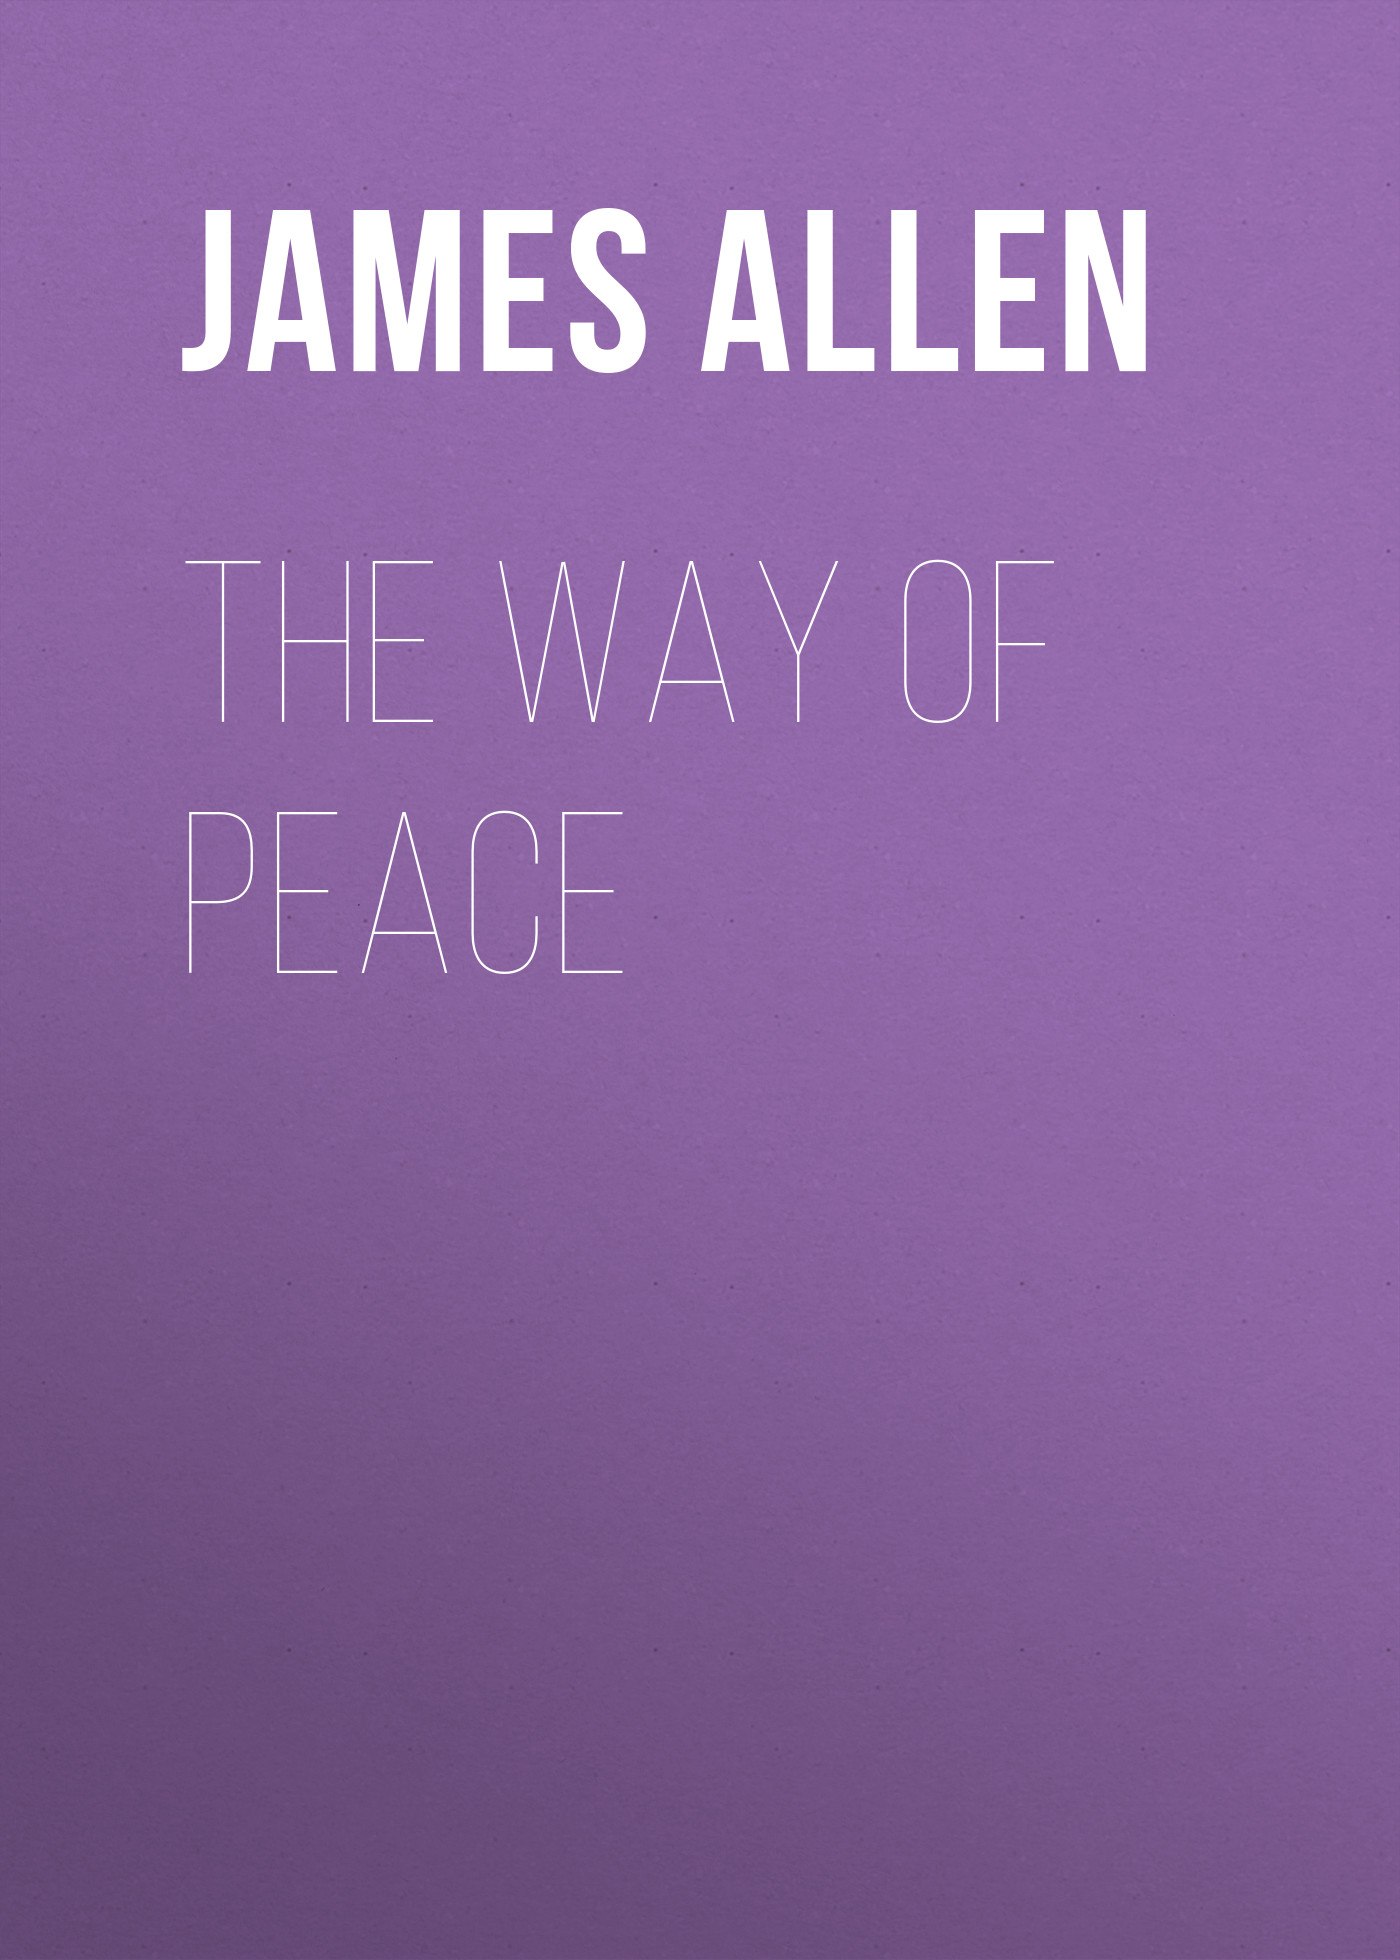 Книга The Way of Peace из серии , созданная James Allen, может относится к жанру Зарубежная классика, Философия, Зарубежная психология, Зарубежная старинная литература. Стоимость электронной книги The Way of Peace с идентификатором 34840798 составляет 0 руб.